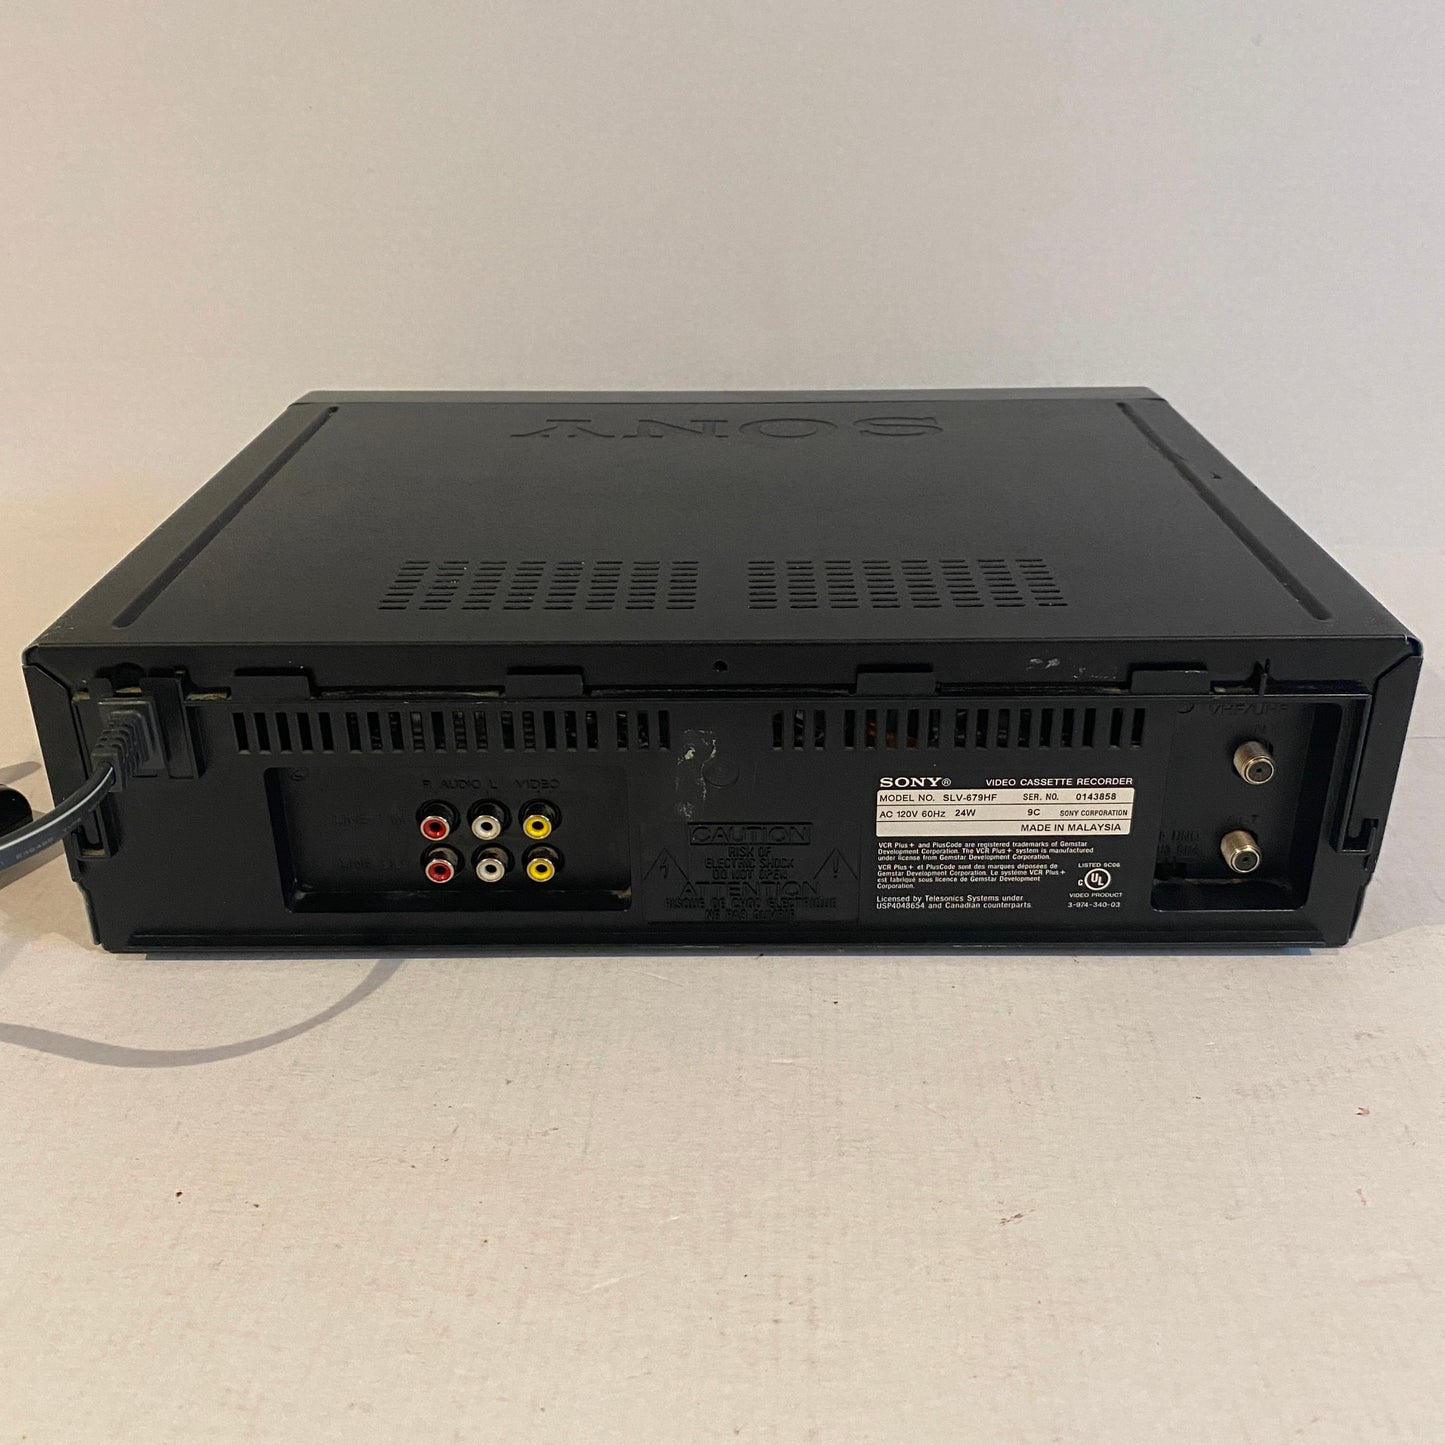 Sony VHS VCR with Remote - SLV679HF